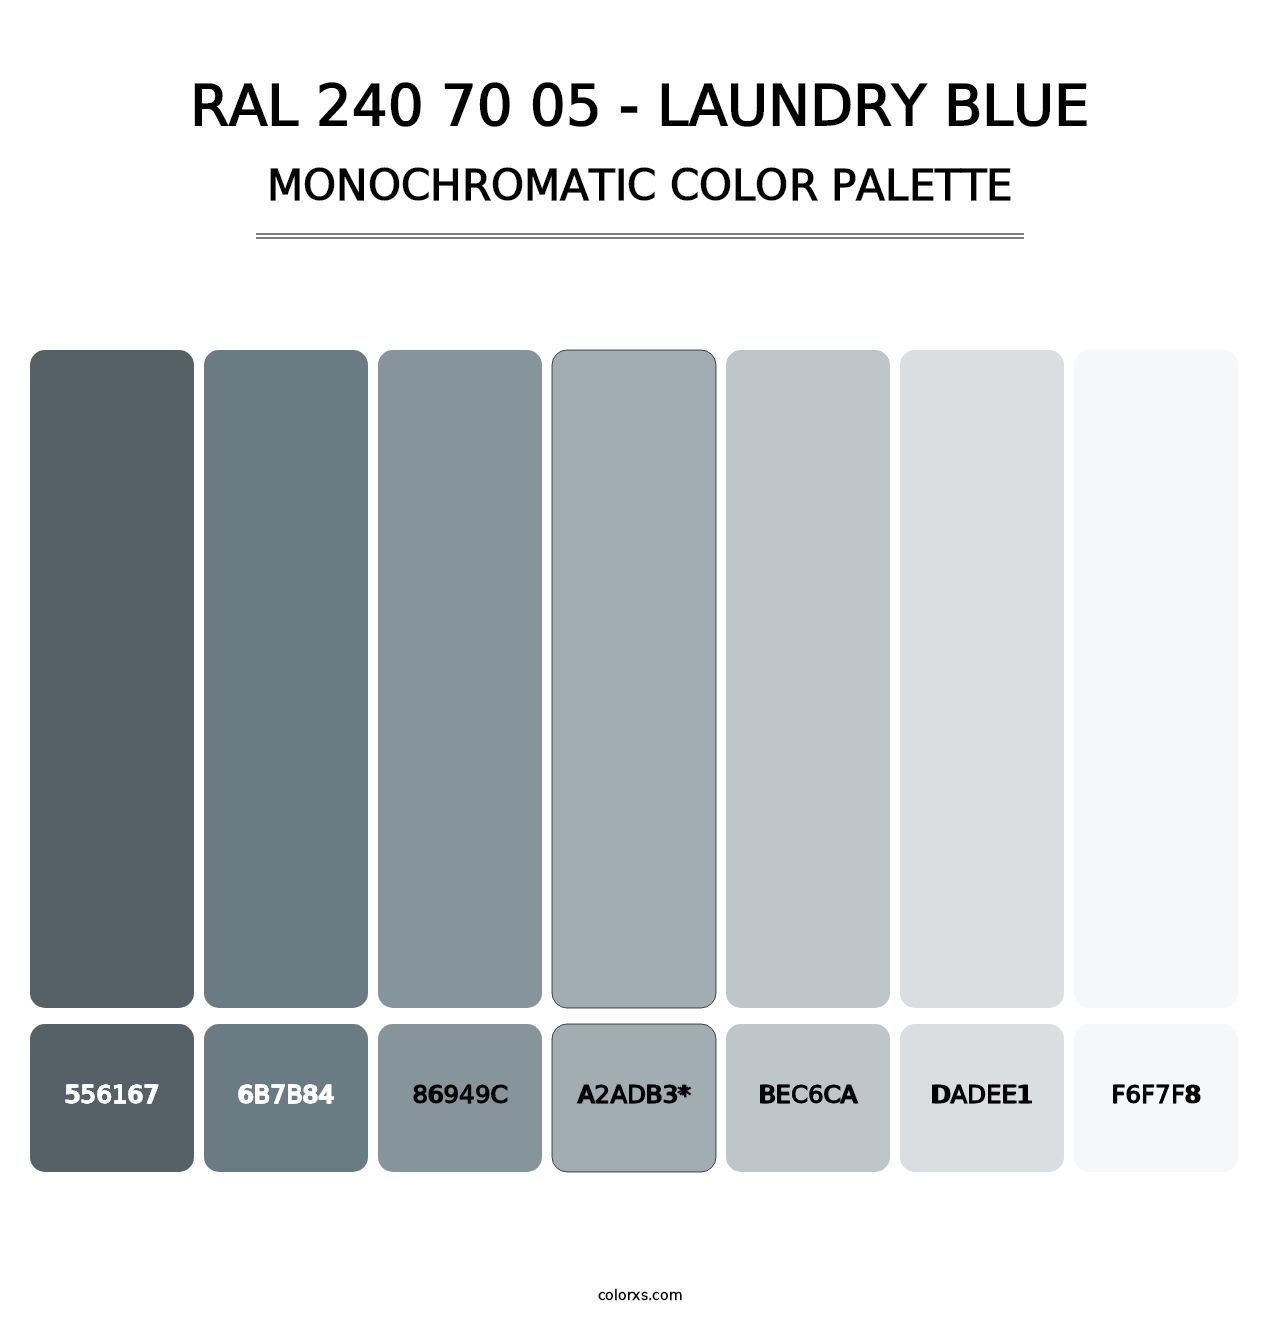 RAL 240 70 05 - Laundry Blue - Monochromatic Color Palette